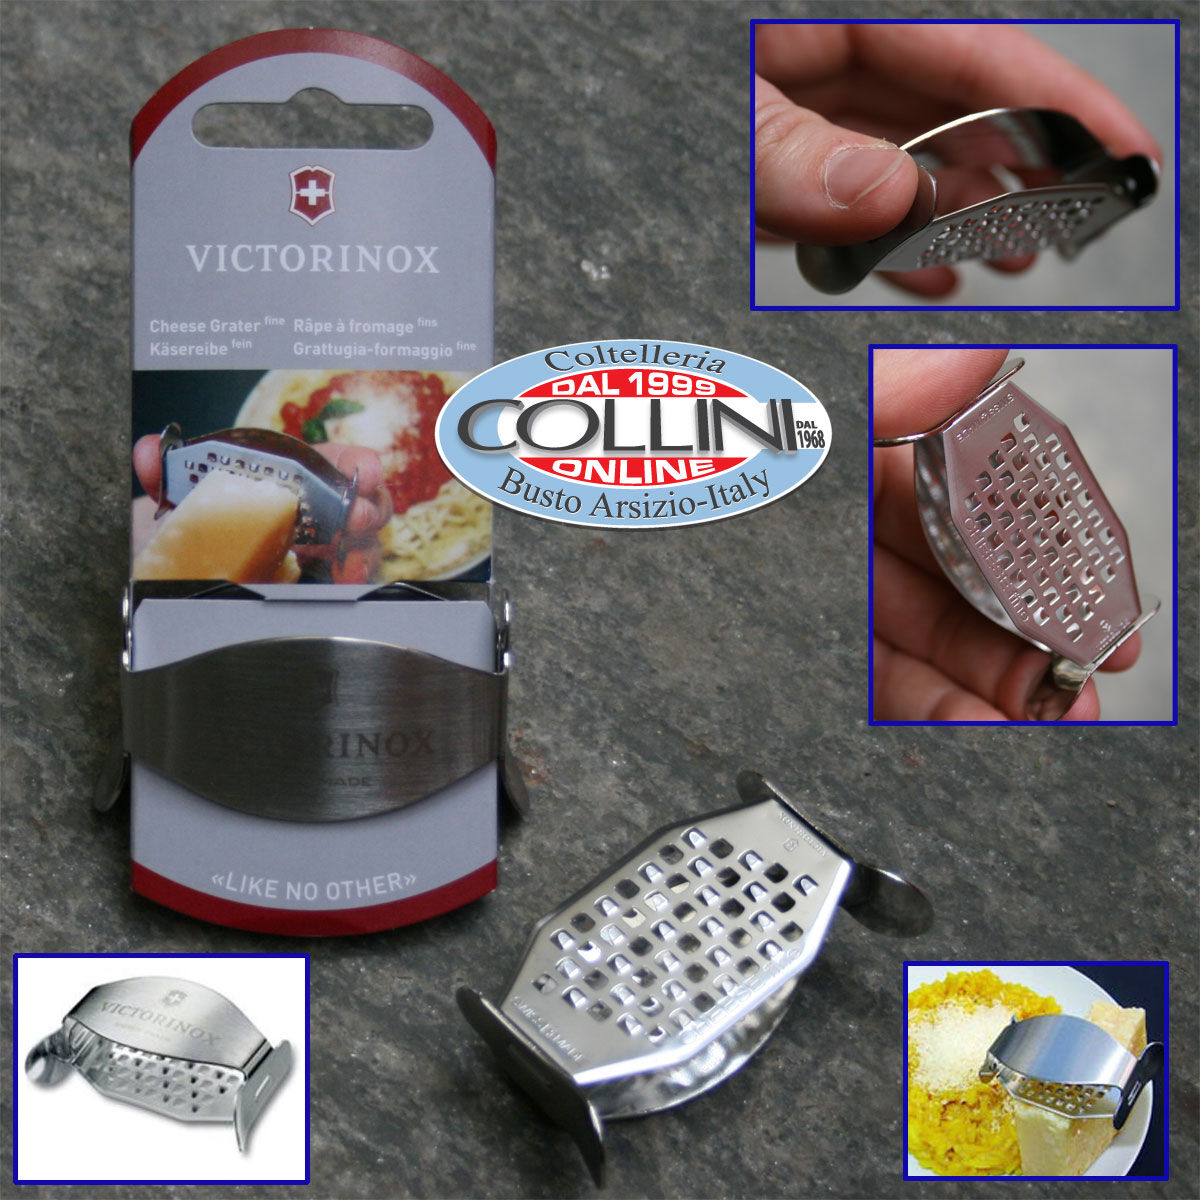 https://www.coltelleriacollini.com/media/catalog/product/cache/2d742e981ffa5c28990fe05a9b6044c9/image/794feac/victorinox-fine-cheese-grater-v-7-60-76-kitchen-item.jpg